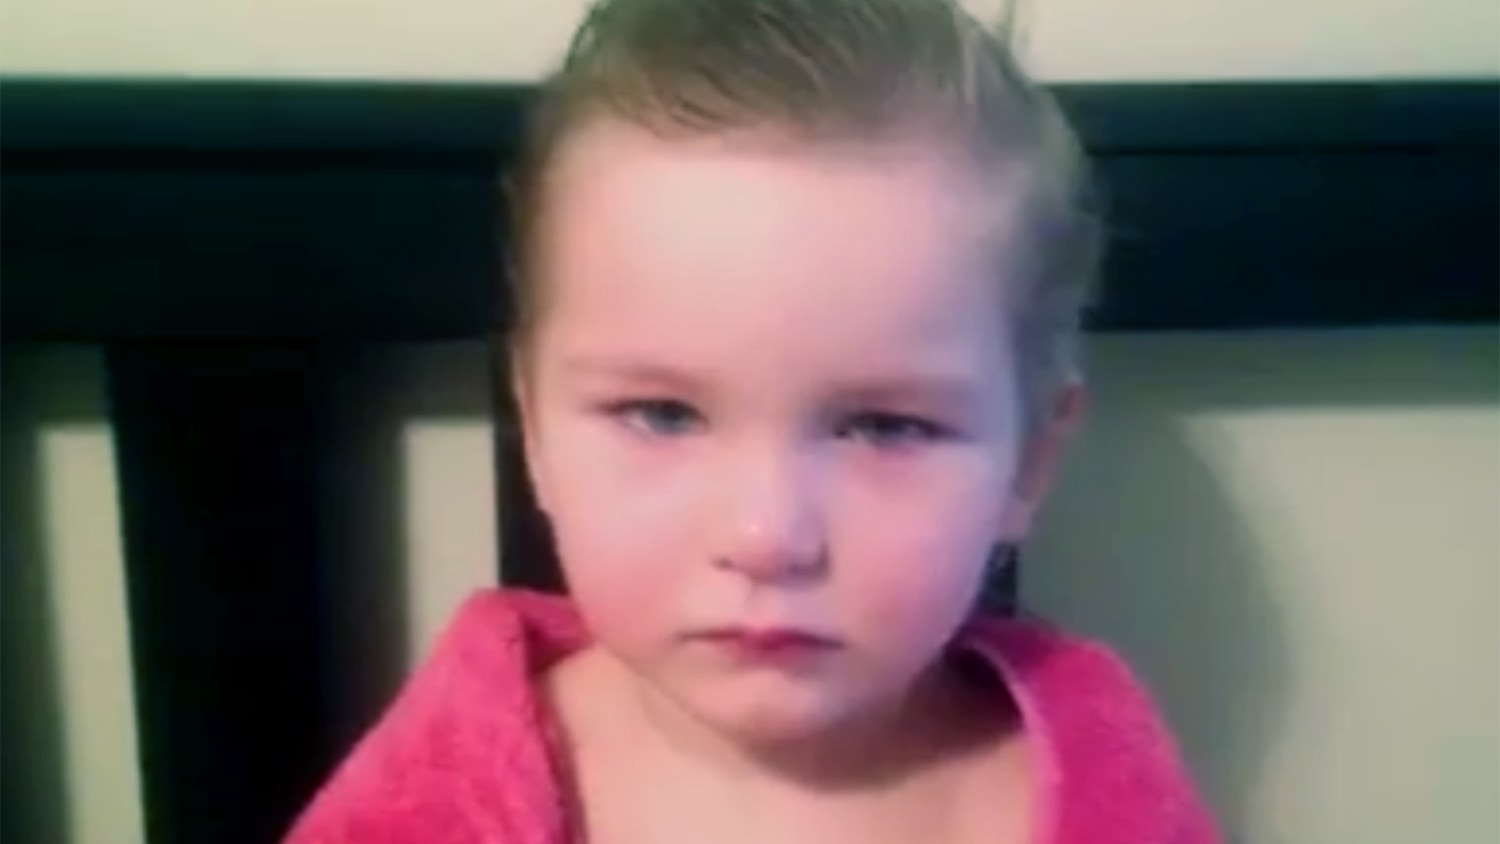 Kid haircut: 3-year-old cuts her own hair, cuteness ensues